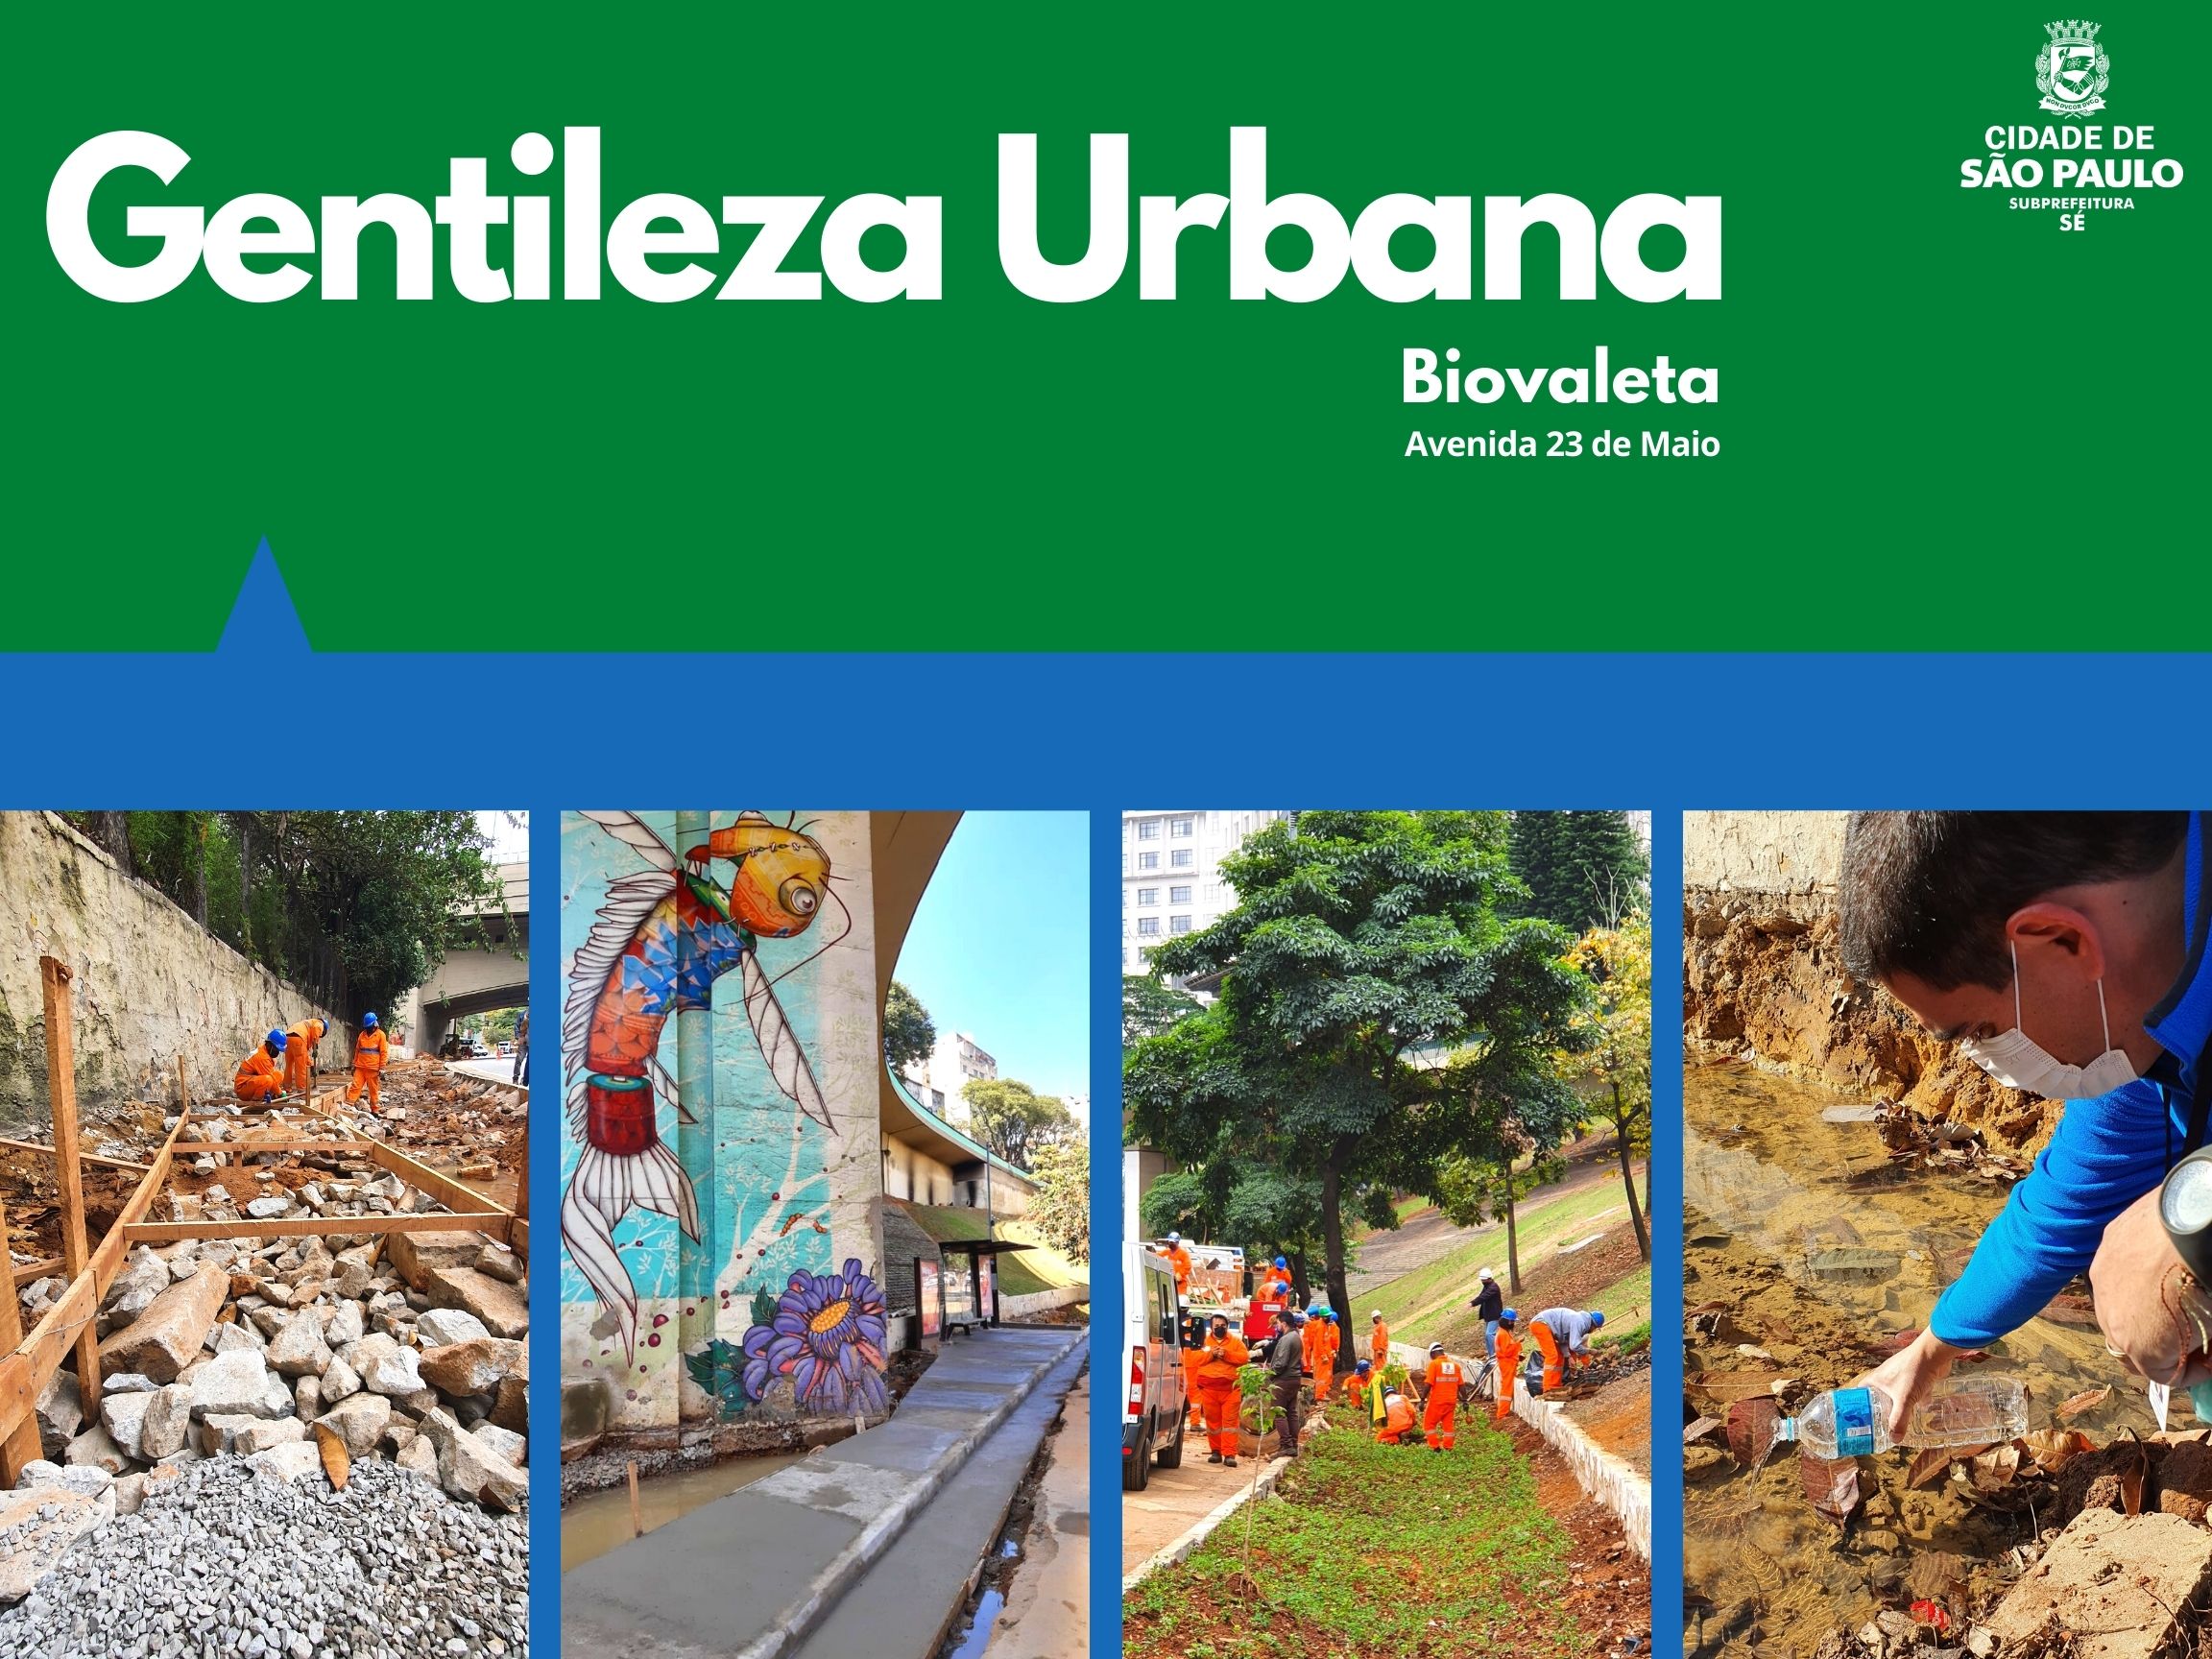 Arte escrito Gentileza Urbana com o logotipo da subprefeitura Sé mostra quatro fotos da biovaleta